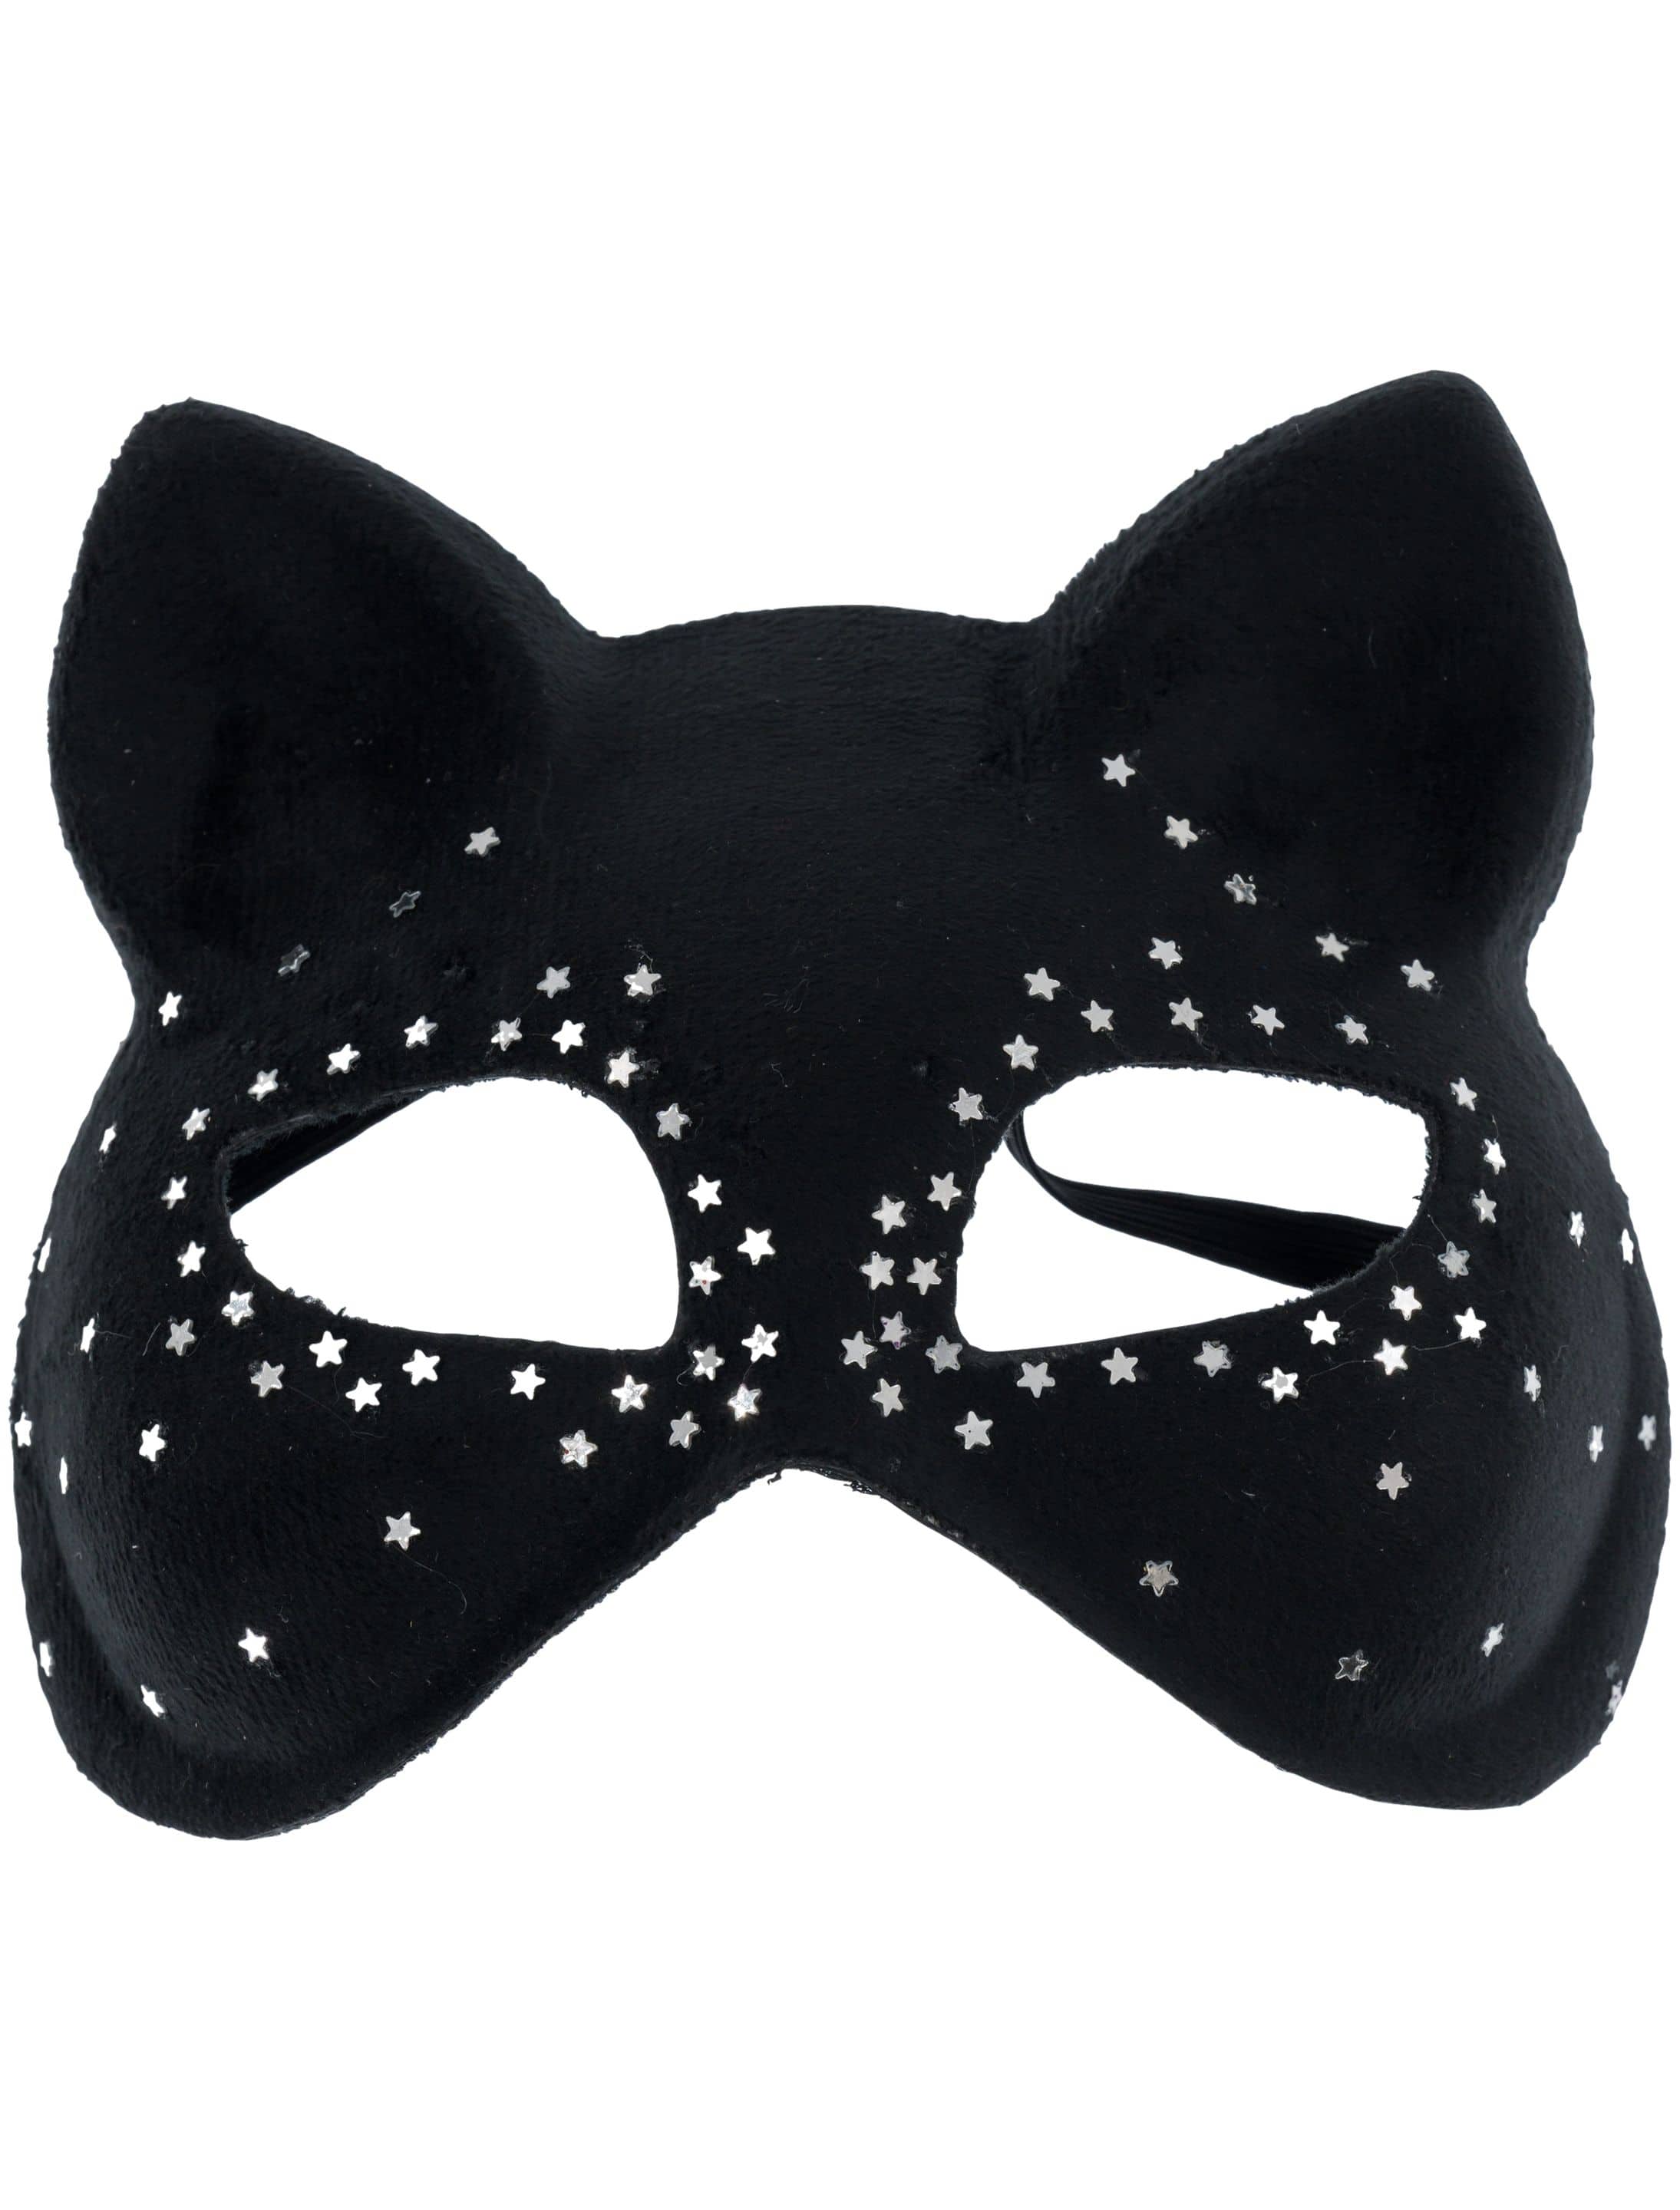 Katzenmaske mit Sternen schwarz